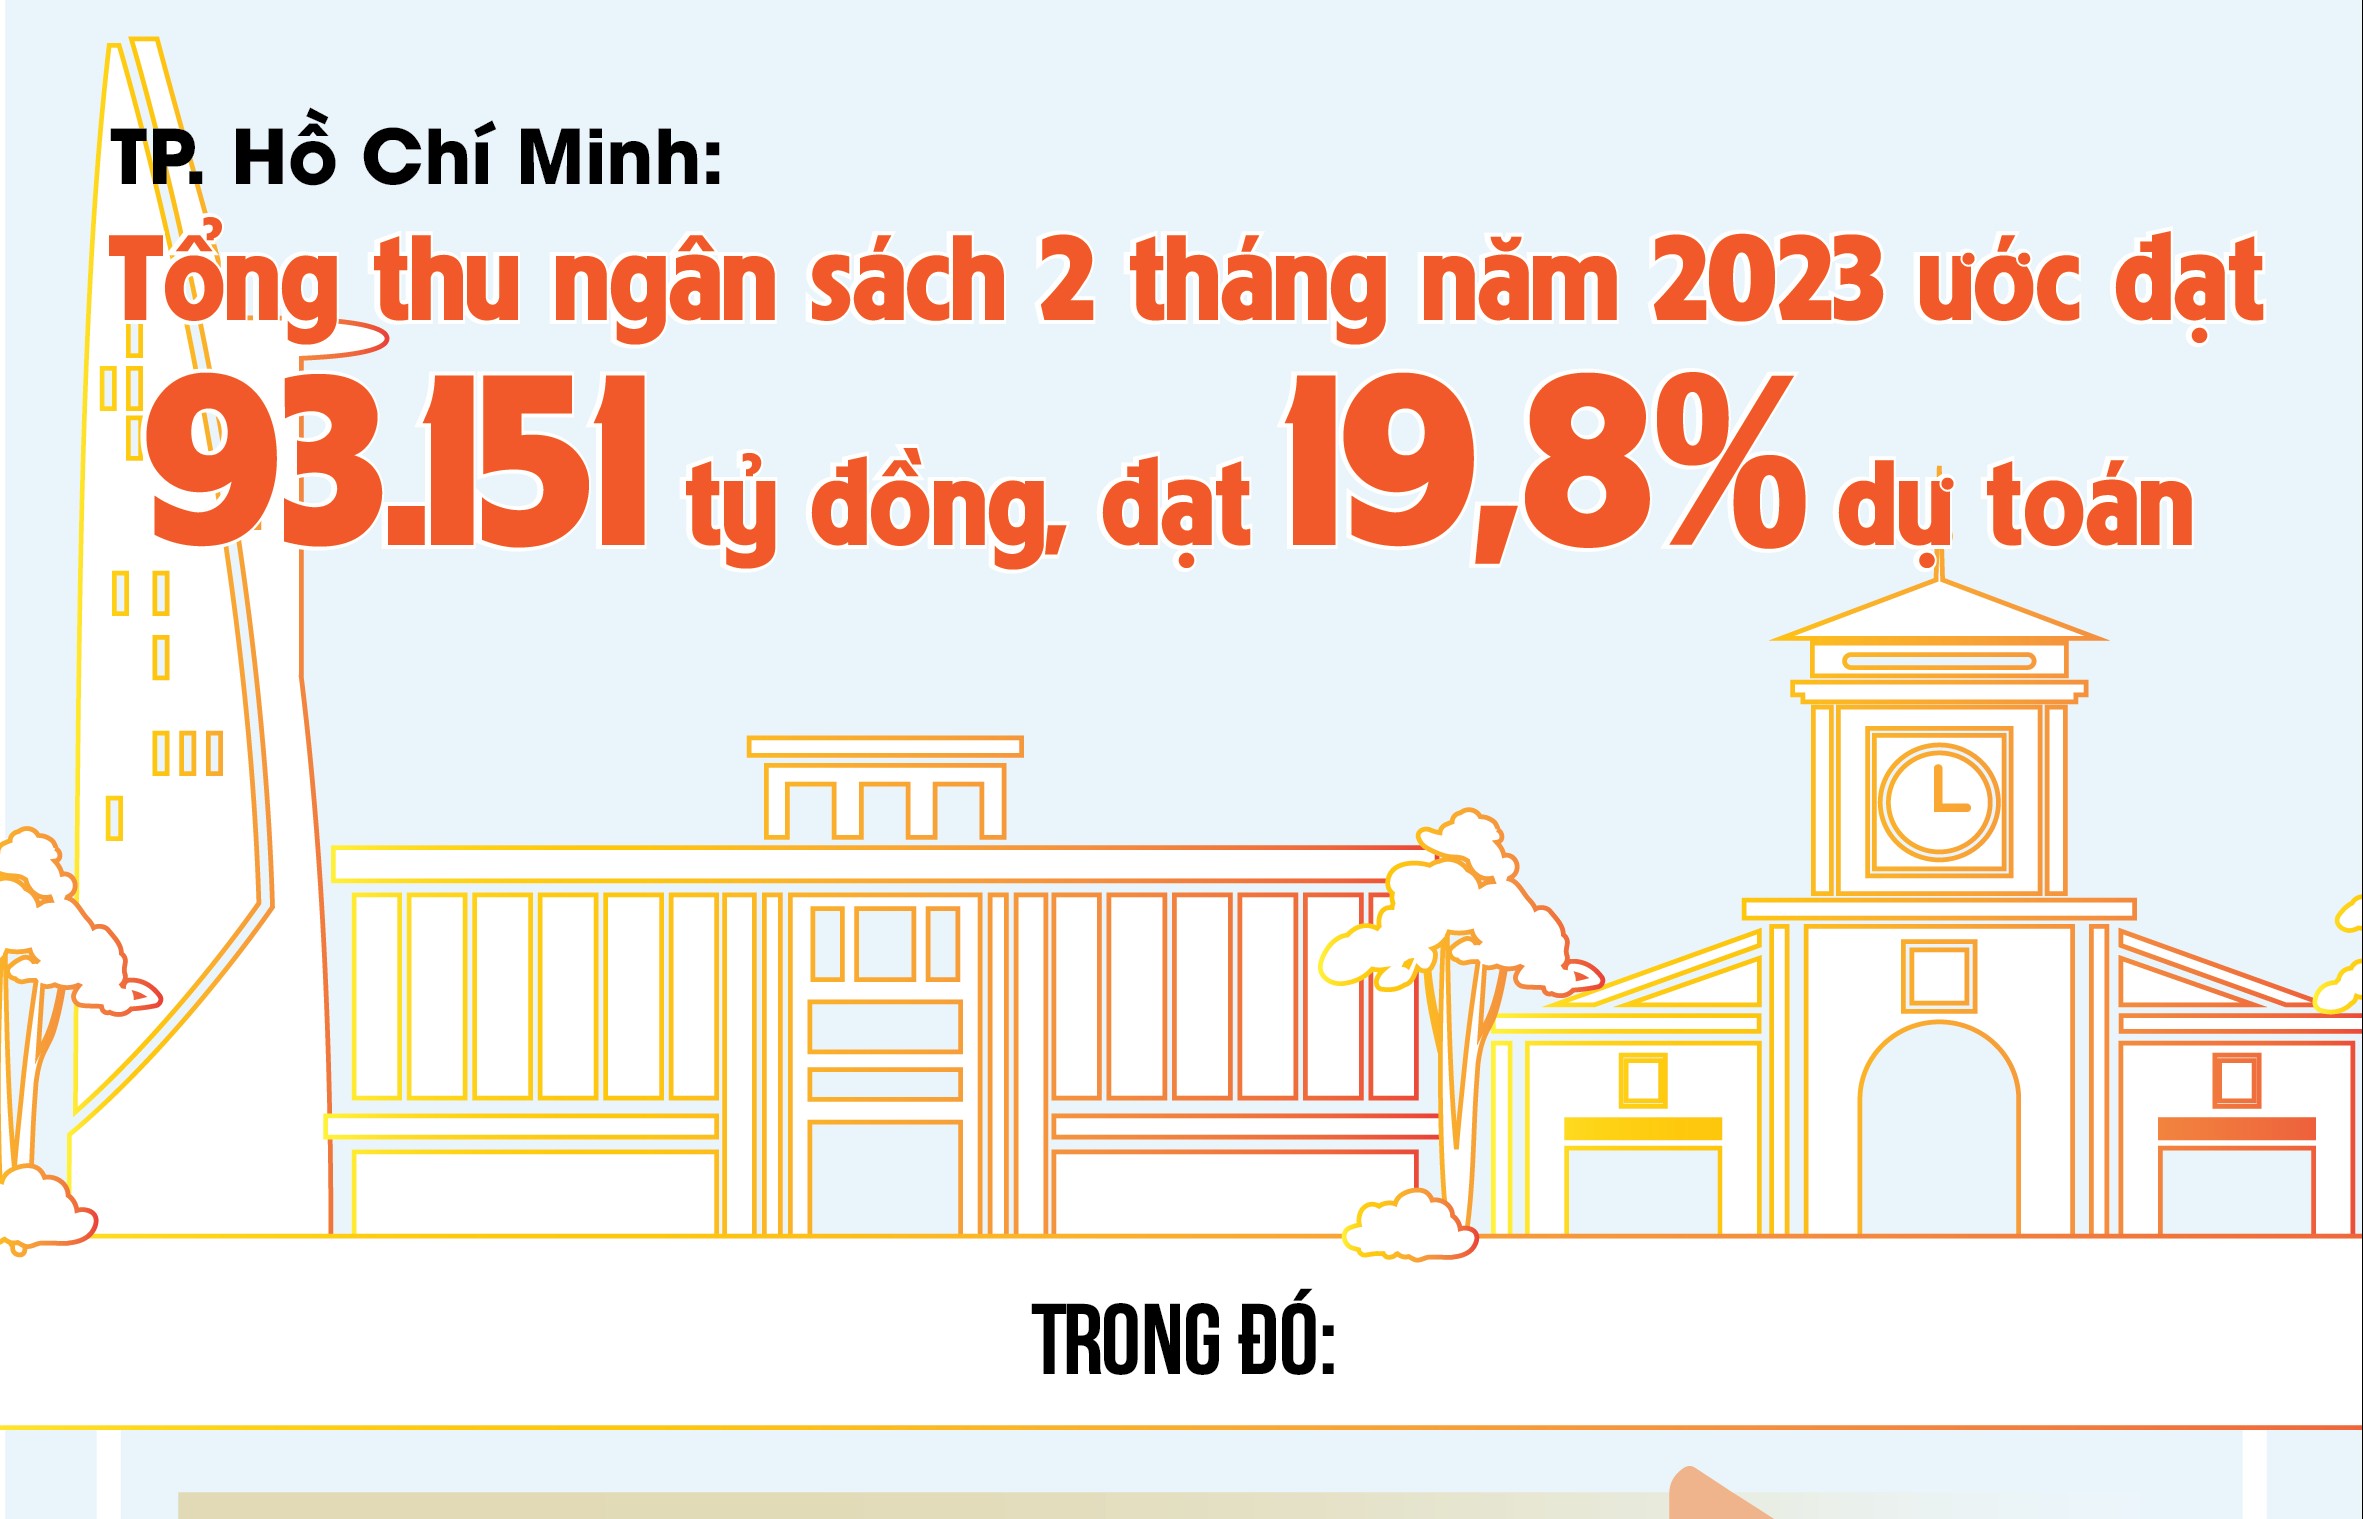 TP. Hồ Chí Minh: Thu ngân sách 2 tháng ước đạt 93.151 tỷ đồng